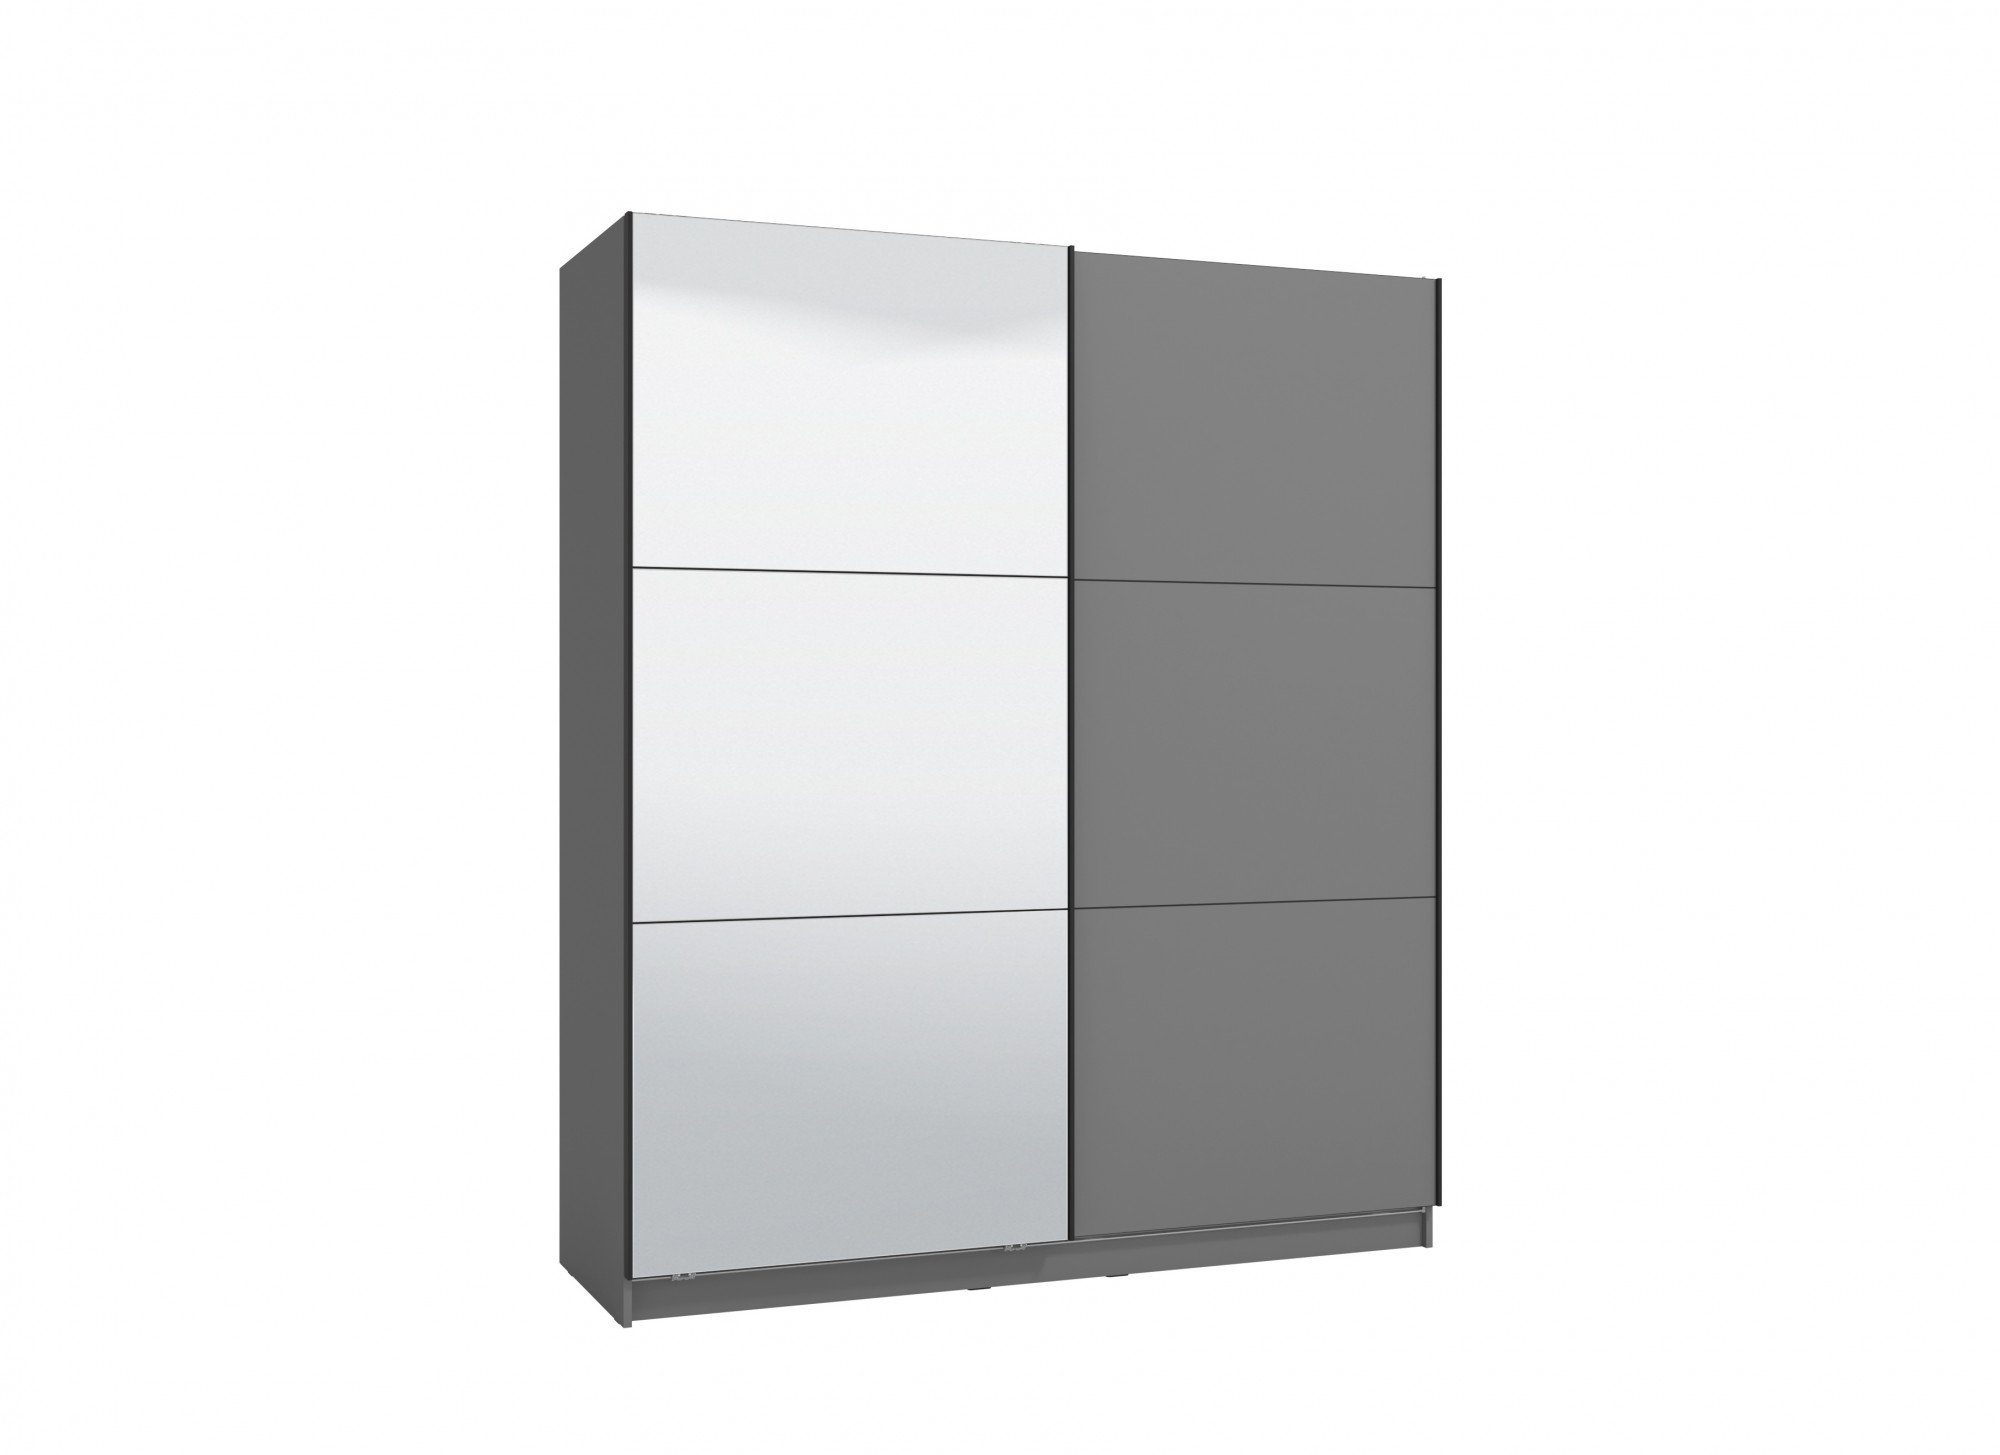 INOSIGN Schwebetürenschrank Sierra mit Graphite grau Inneneinteilung Spiegel, grau | Graphite INKLUSIVE